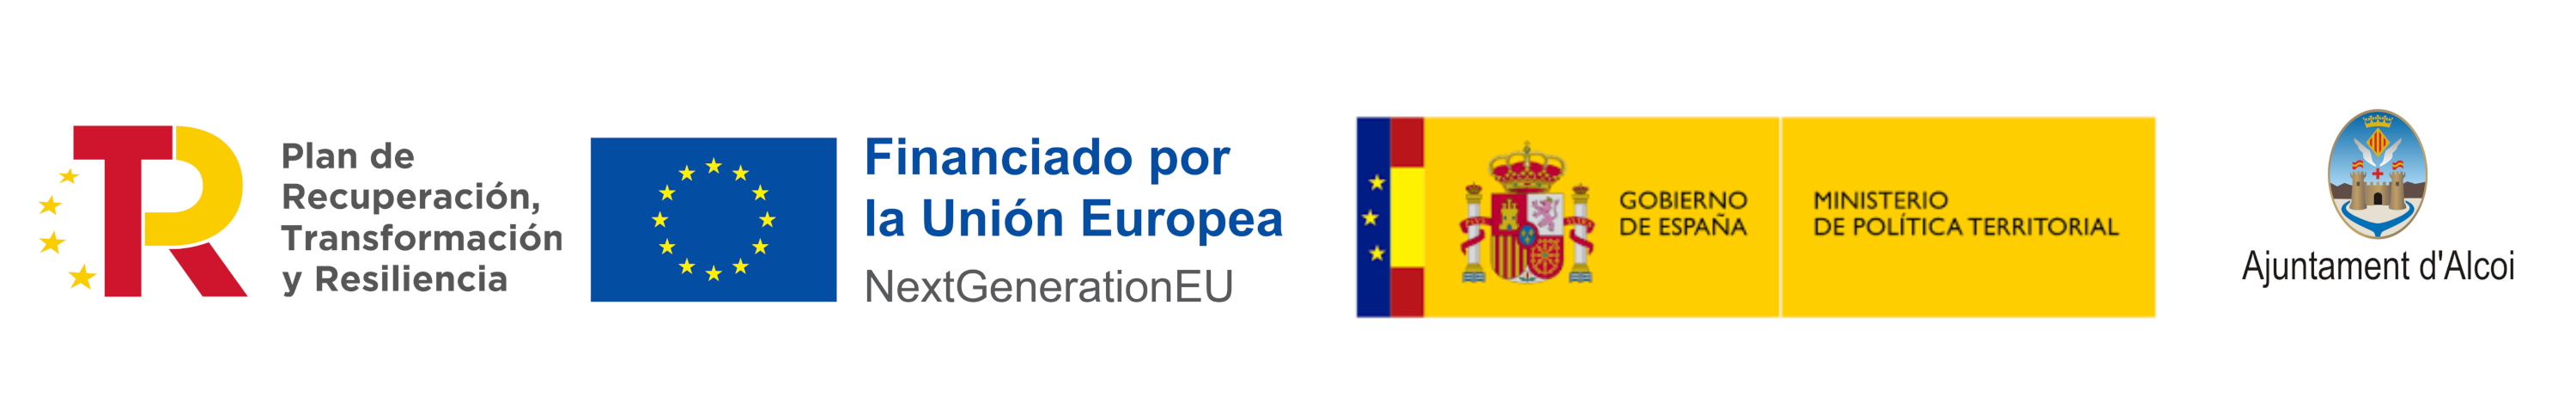 Logotipos Plan de Recuperación, Transformación y Resiliencia; Next Generation UE; Ministerio de Política Territorial, Gobierno de España; Ayuntamiento de Alcoy